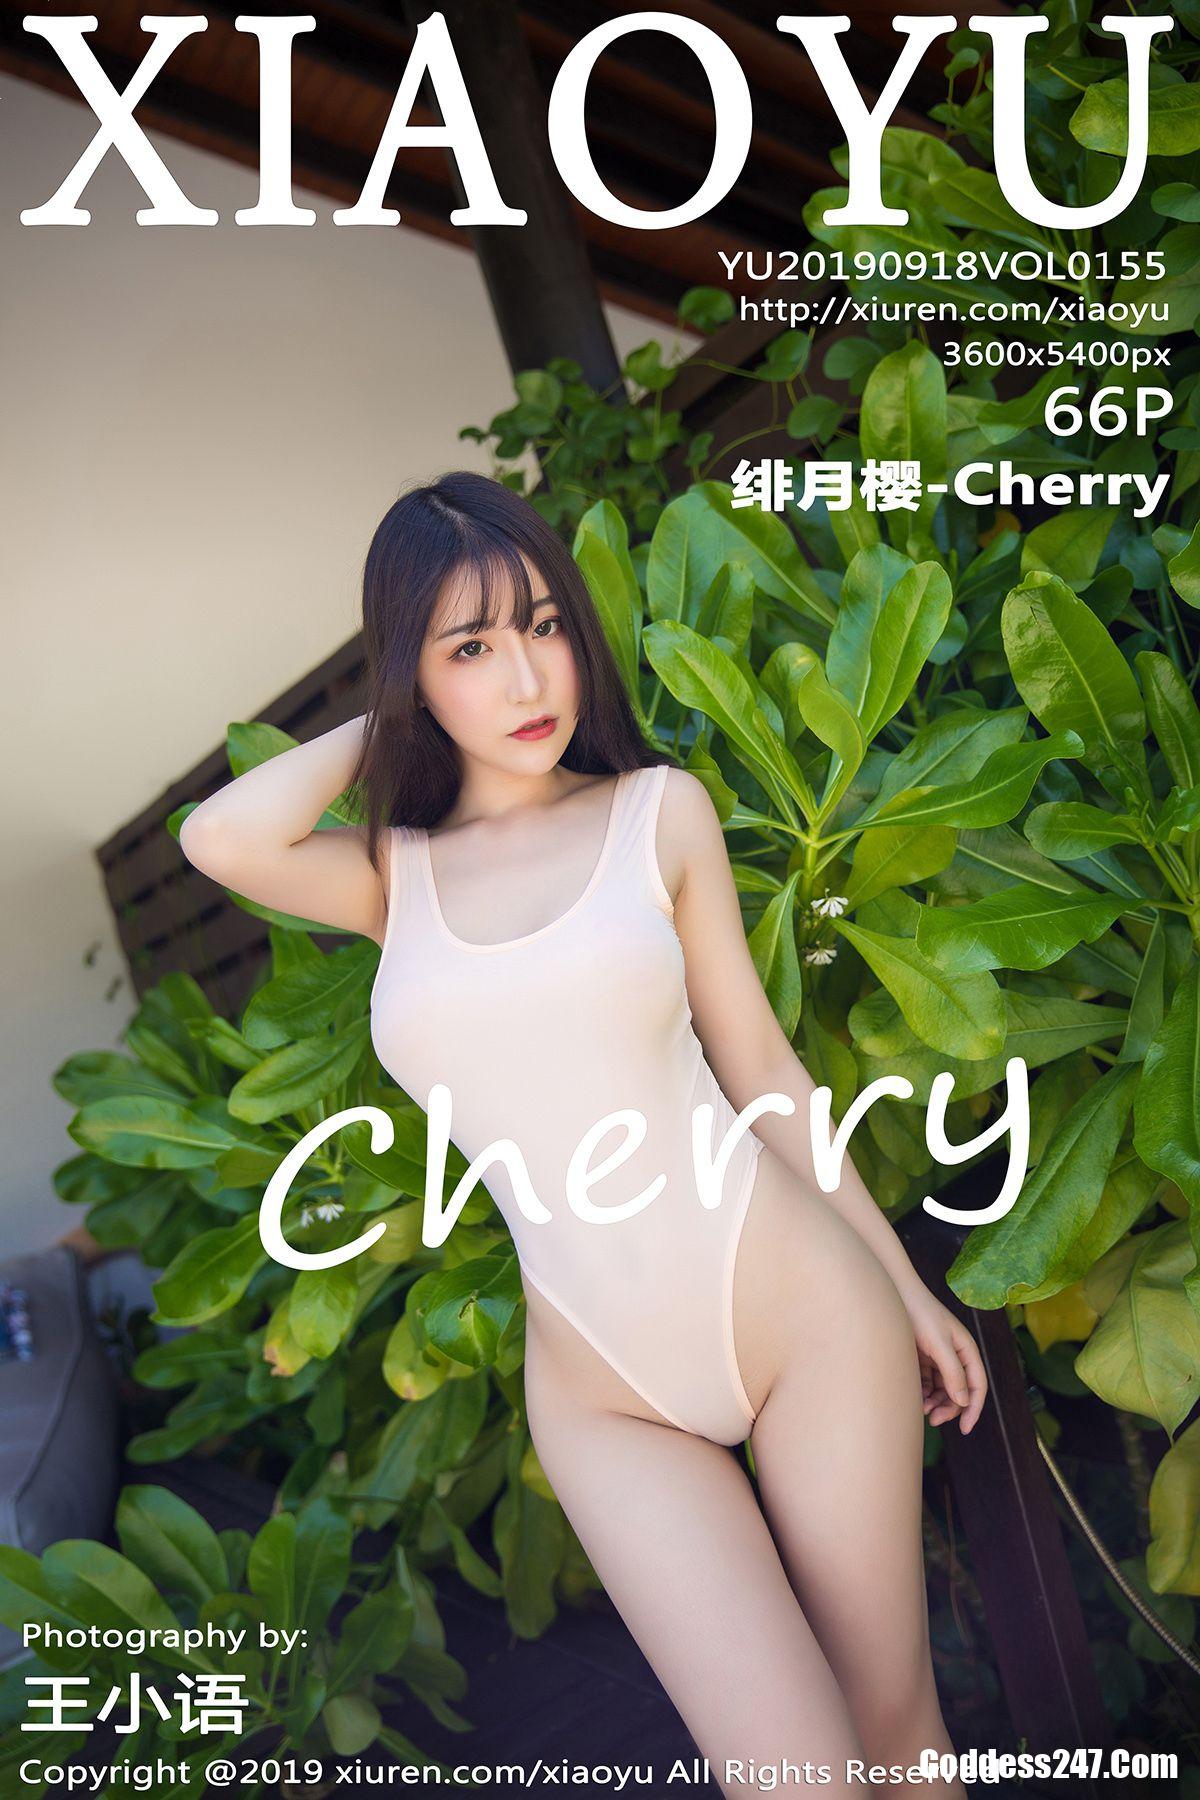 XiaoYu Vol.155 绯月樱-Cherry 1